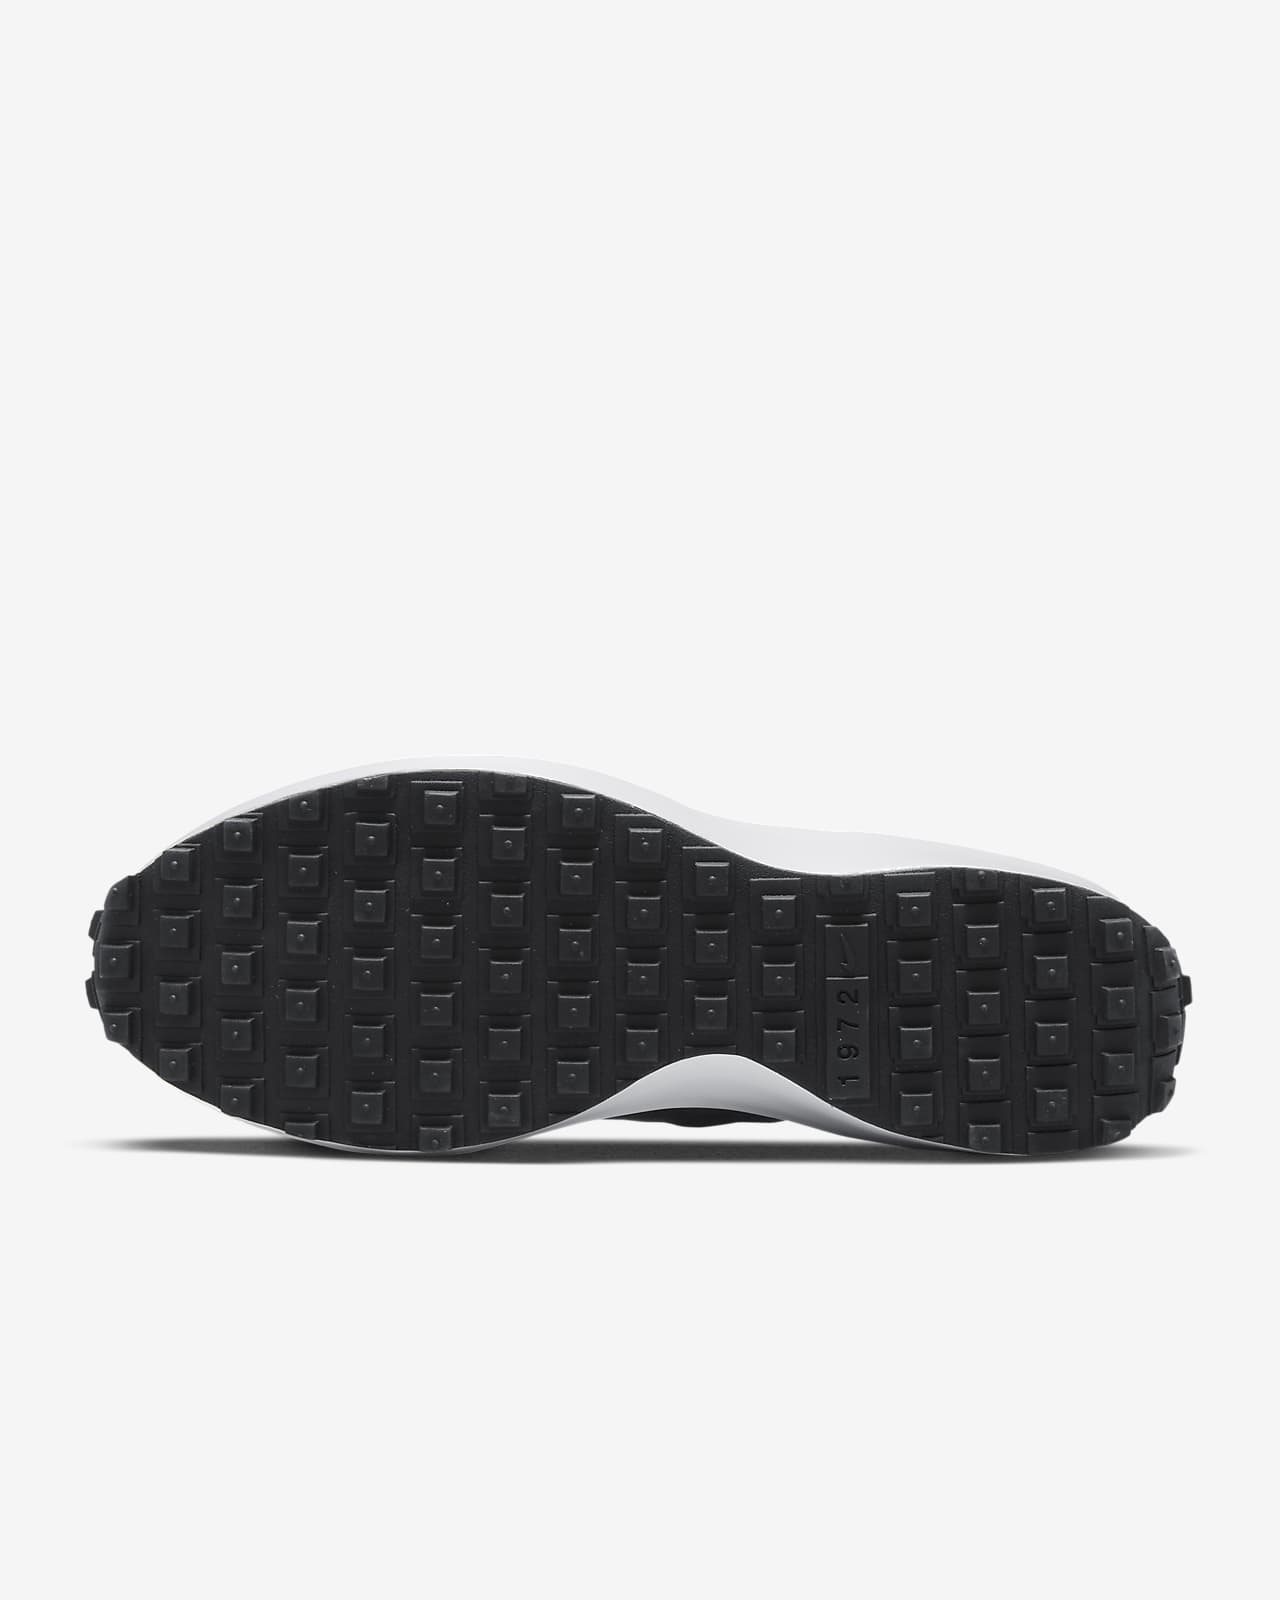 Nike Waffle Debut Men's Shoes. Nike NL